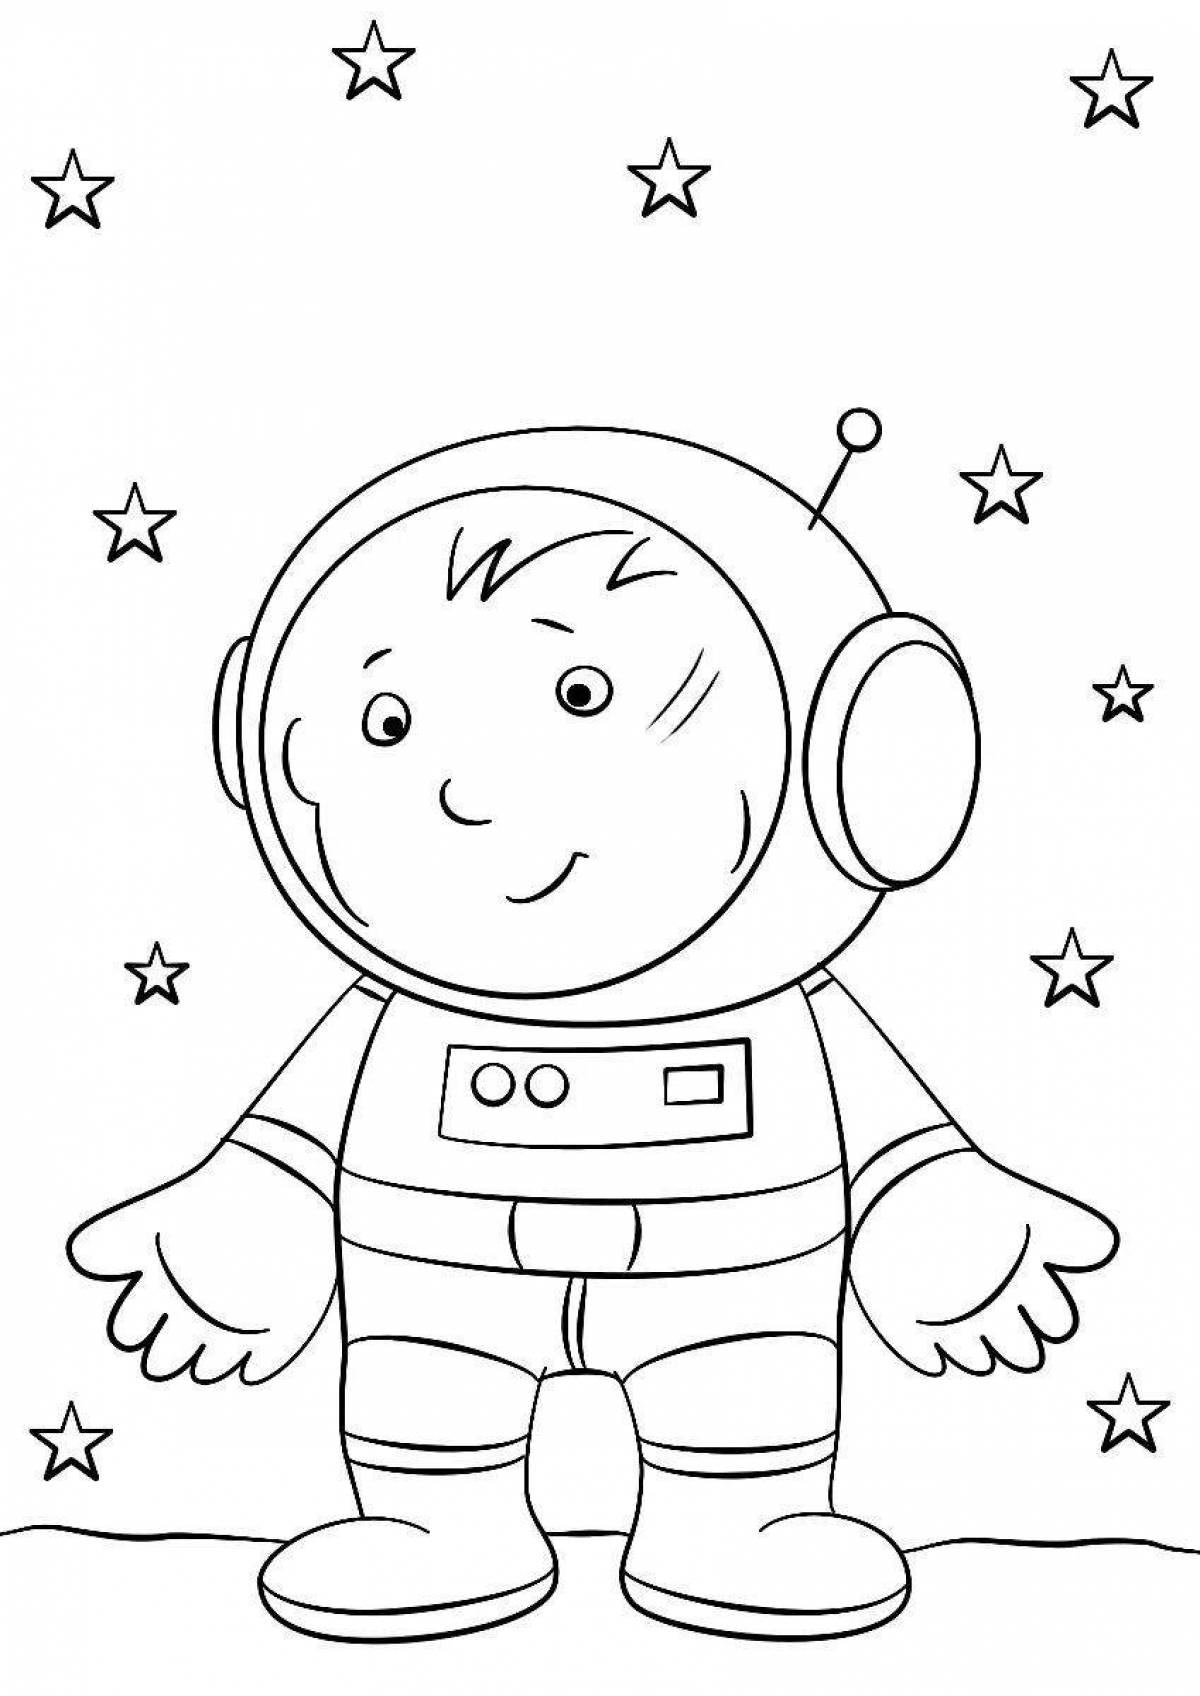 Яркая раскраска космонавта для детей